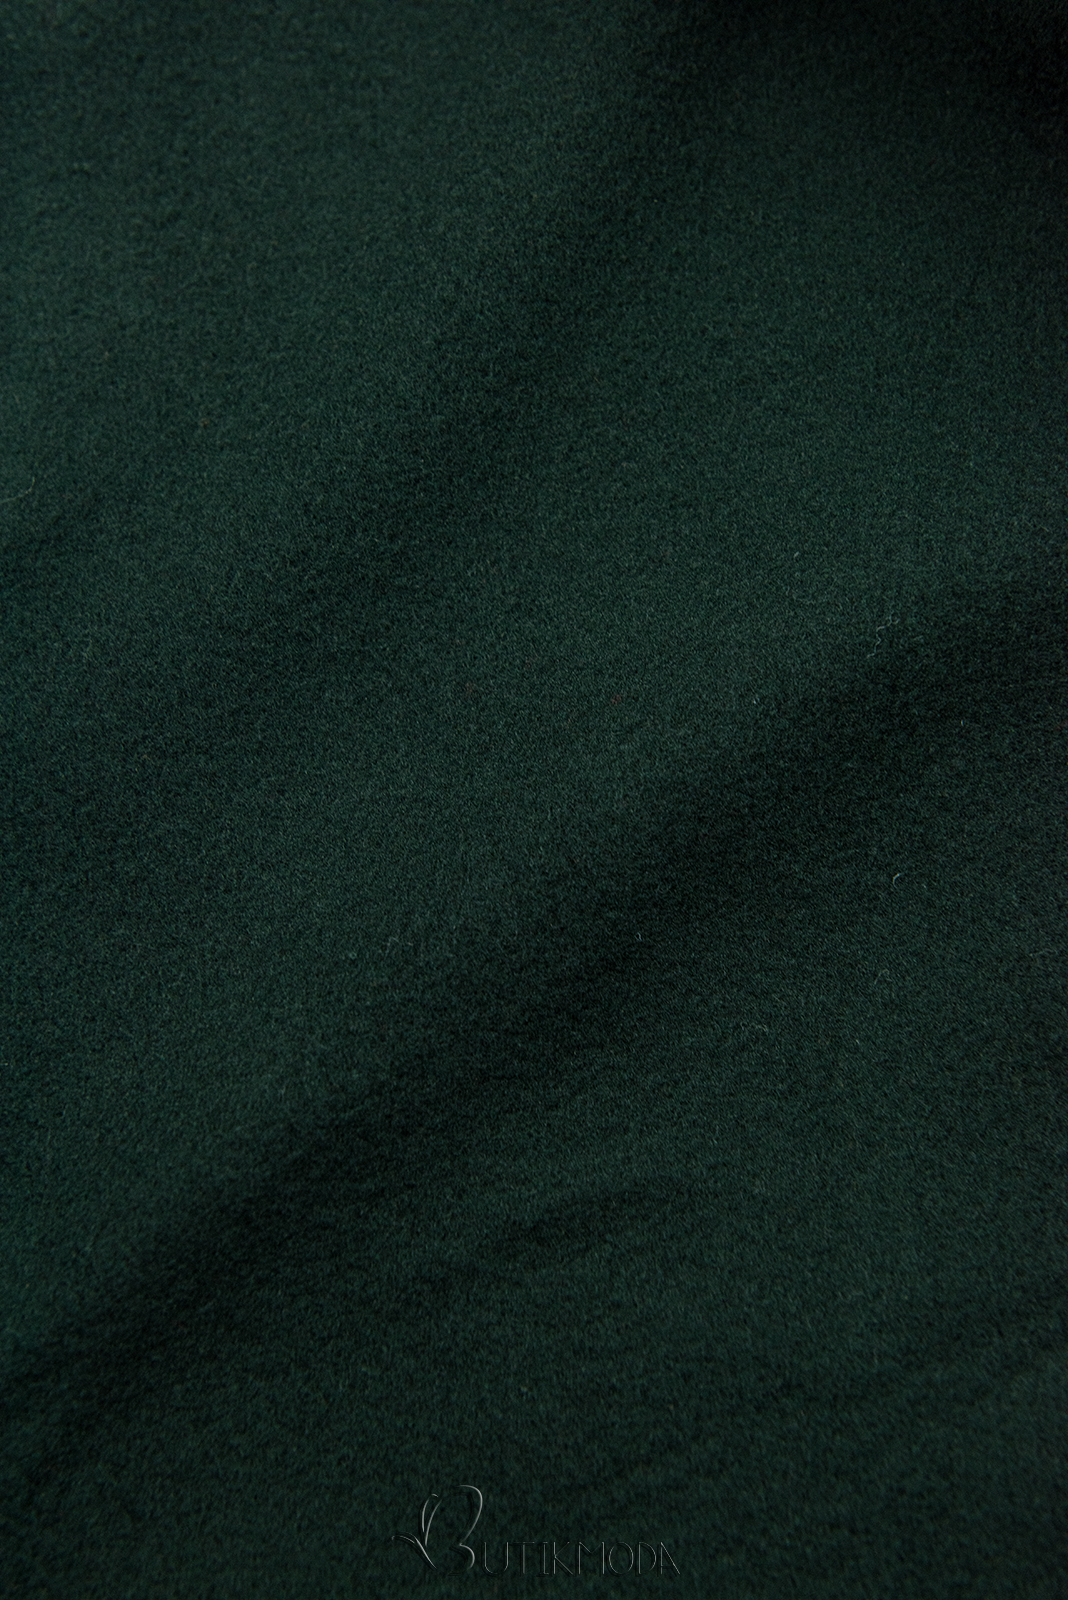 Smaragdzöld színű hosszú felső kapucnival